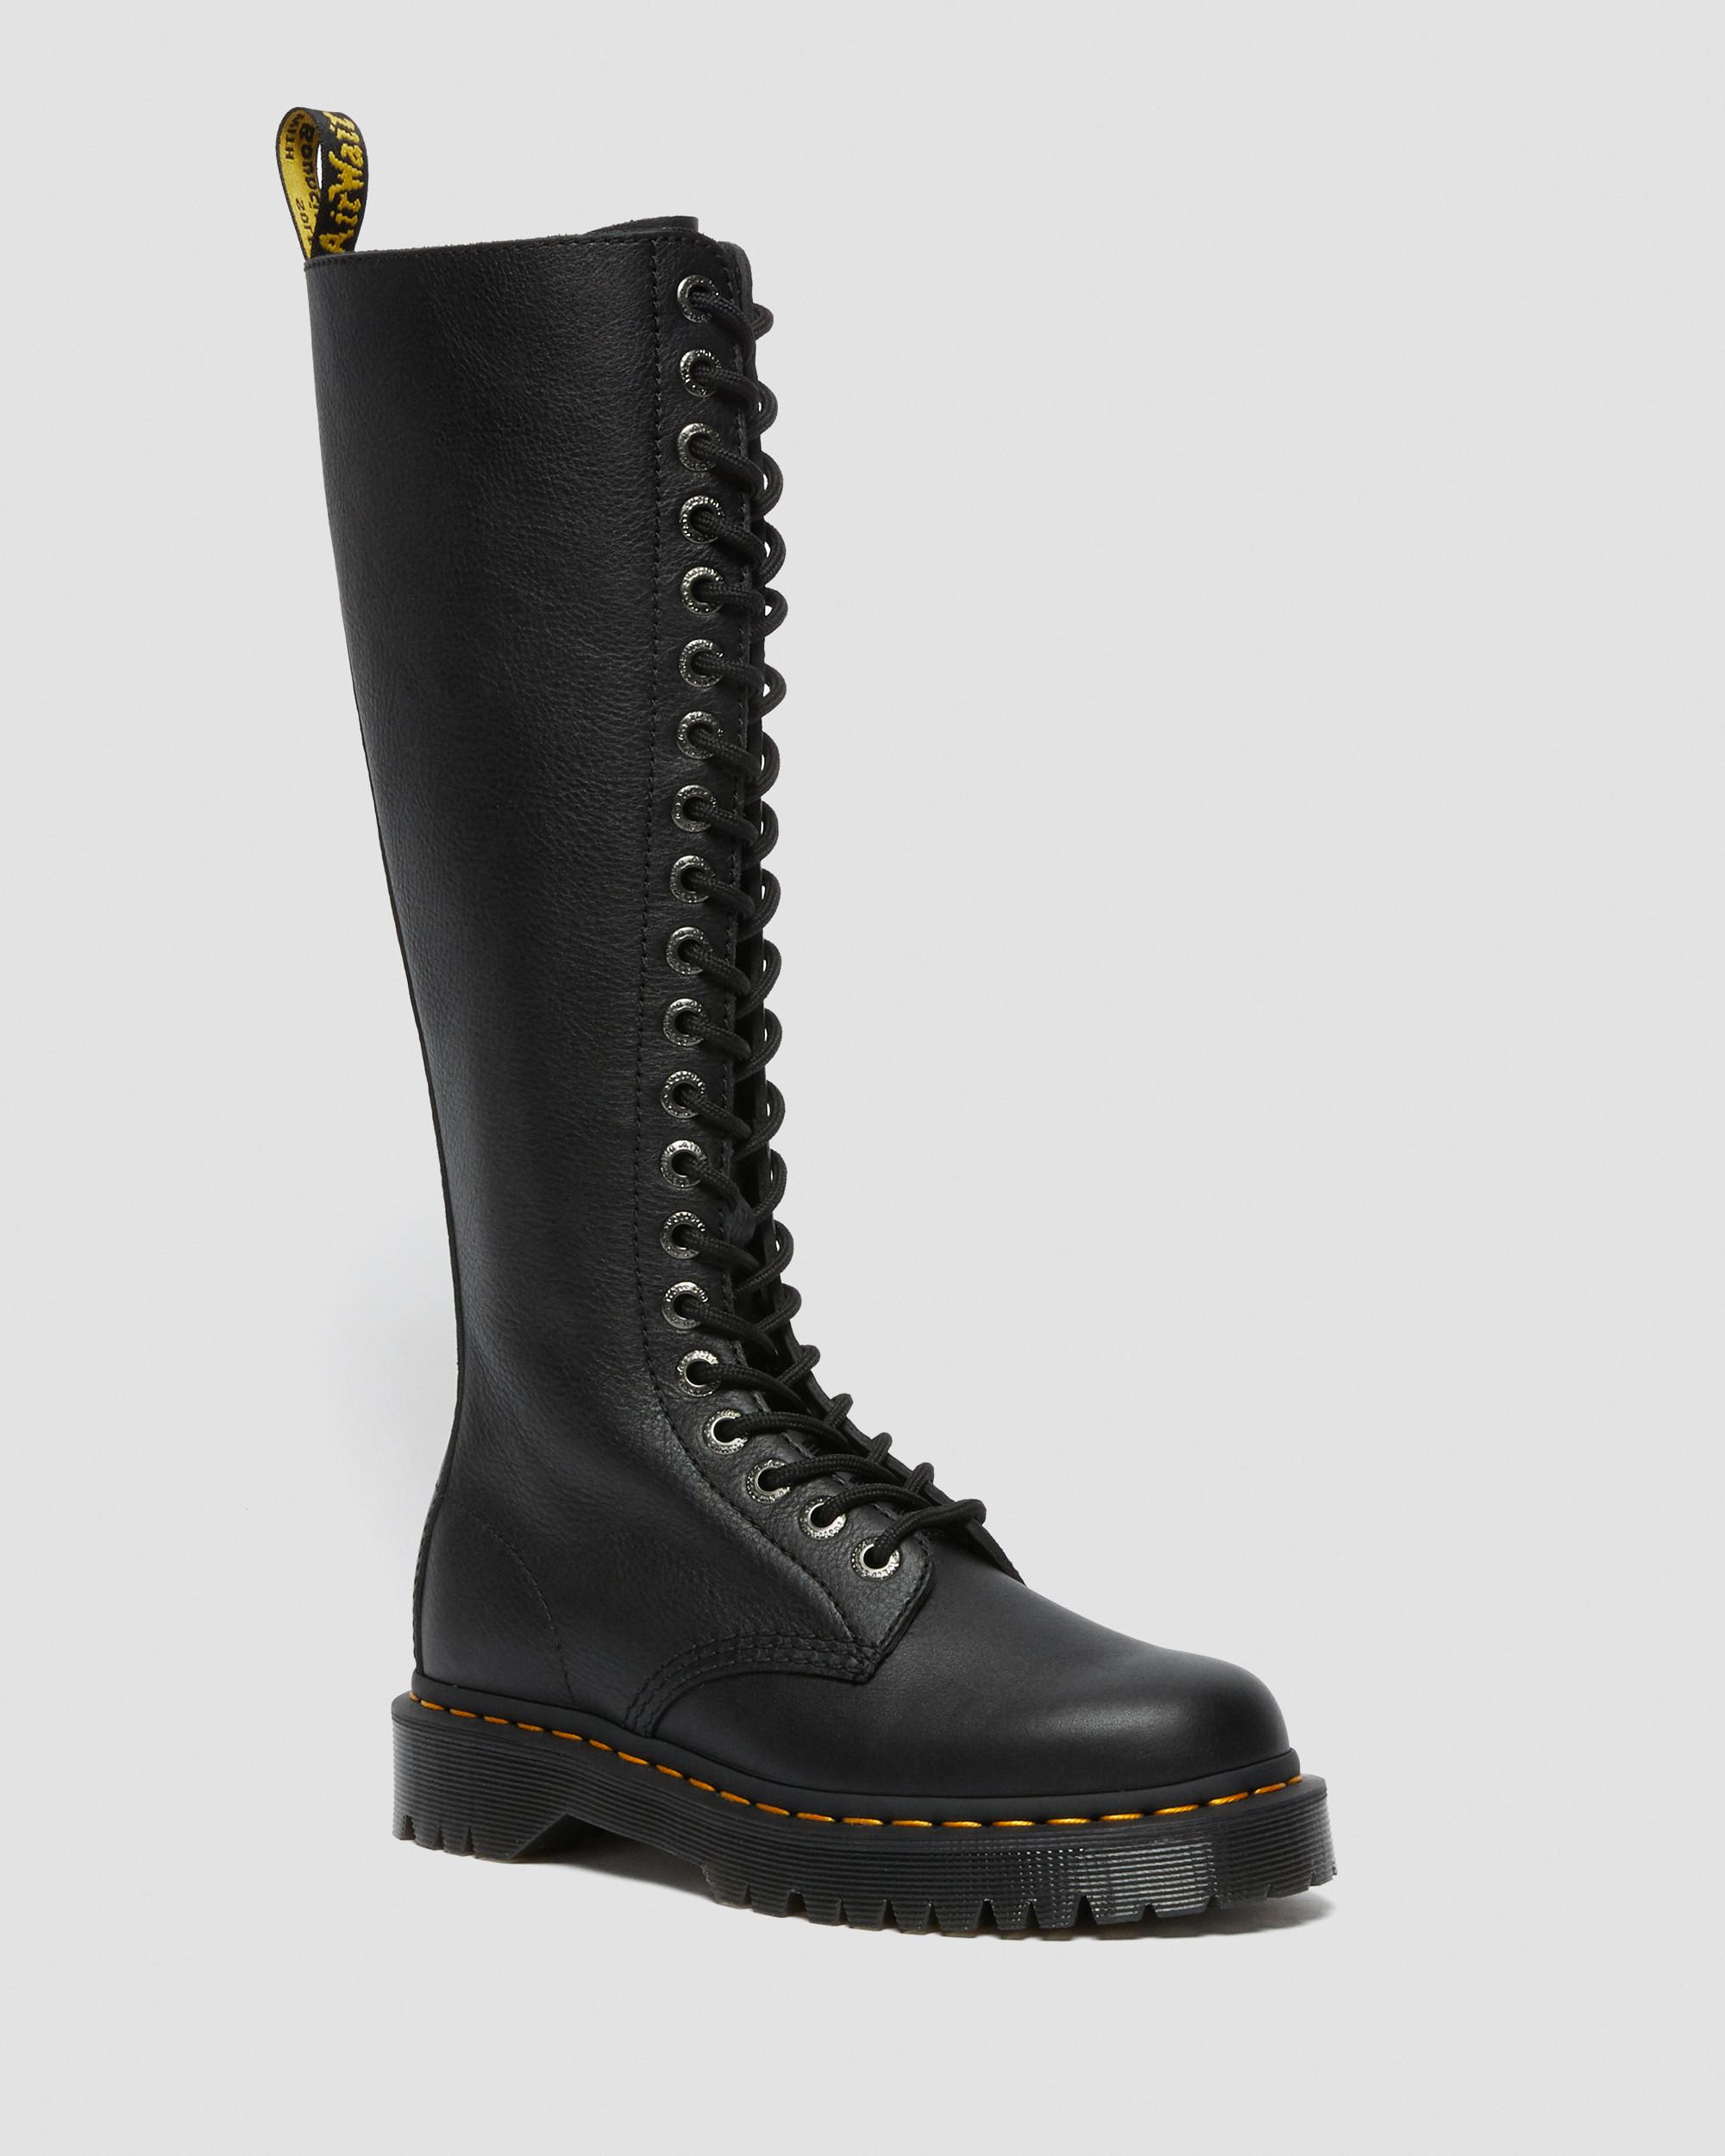 åbenbaring Inspiration bilag 1B60 Bex Pisa Leather Knee High Boots | Dr. Martens